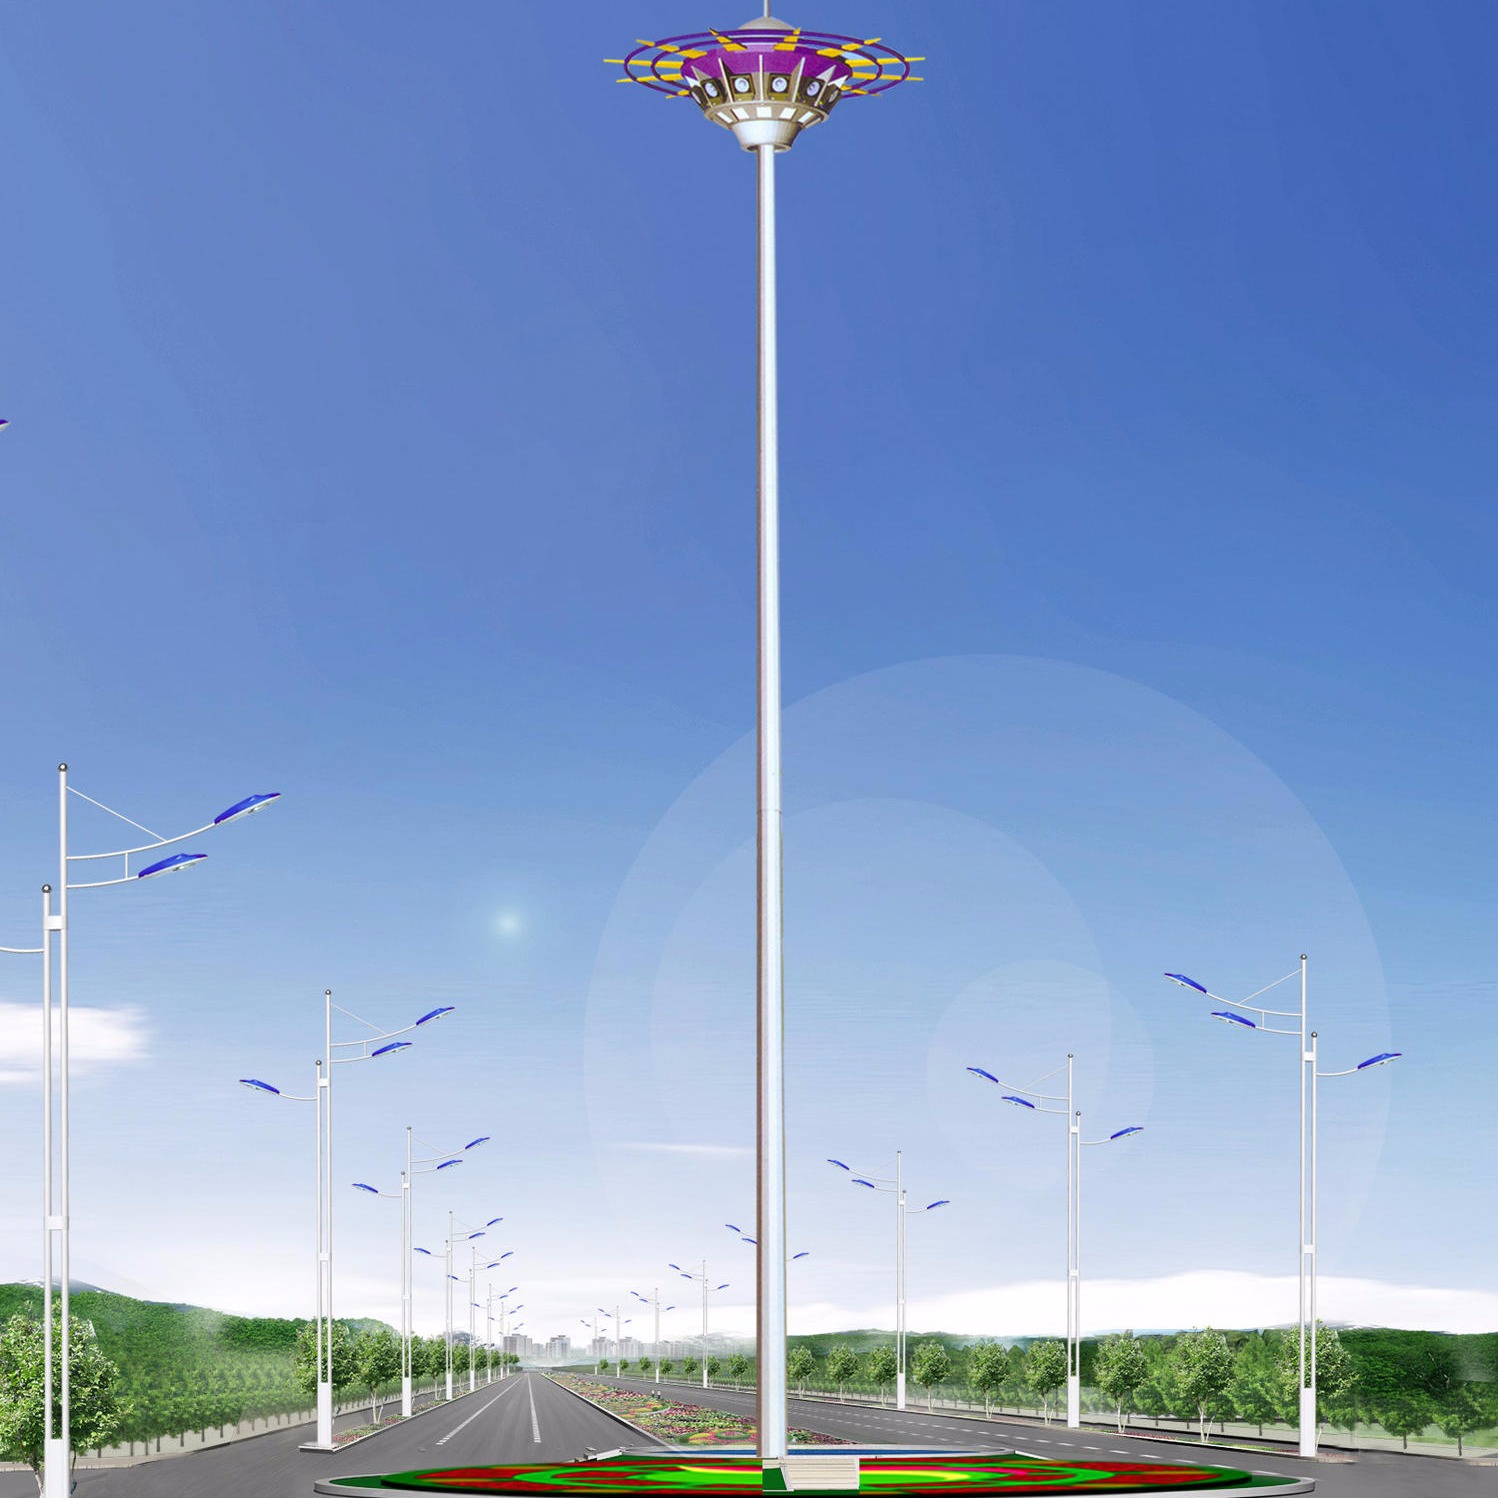 专业led高杆灯厂家 贵州高杆灯厂家 20米高杆灯 定制高杆灯长度图片